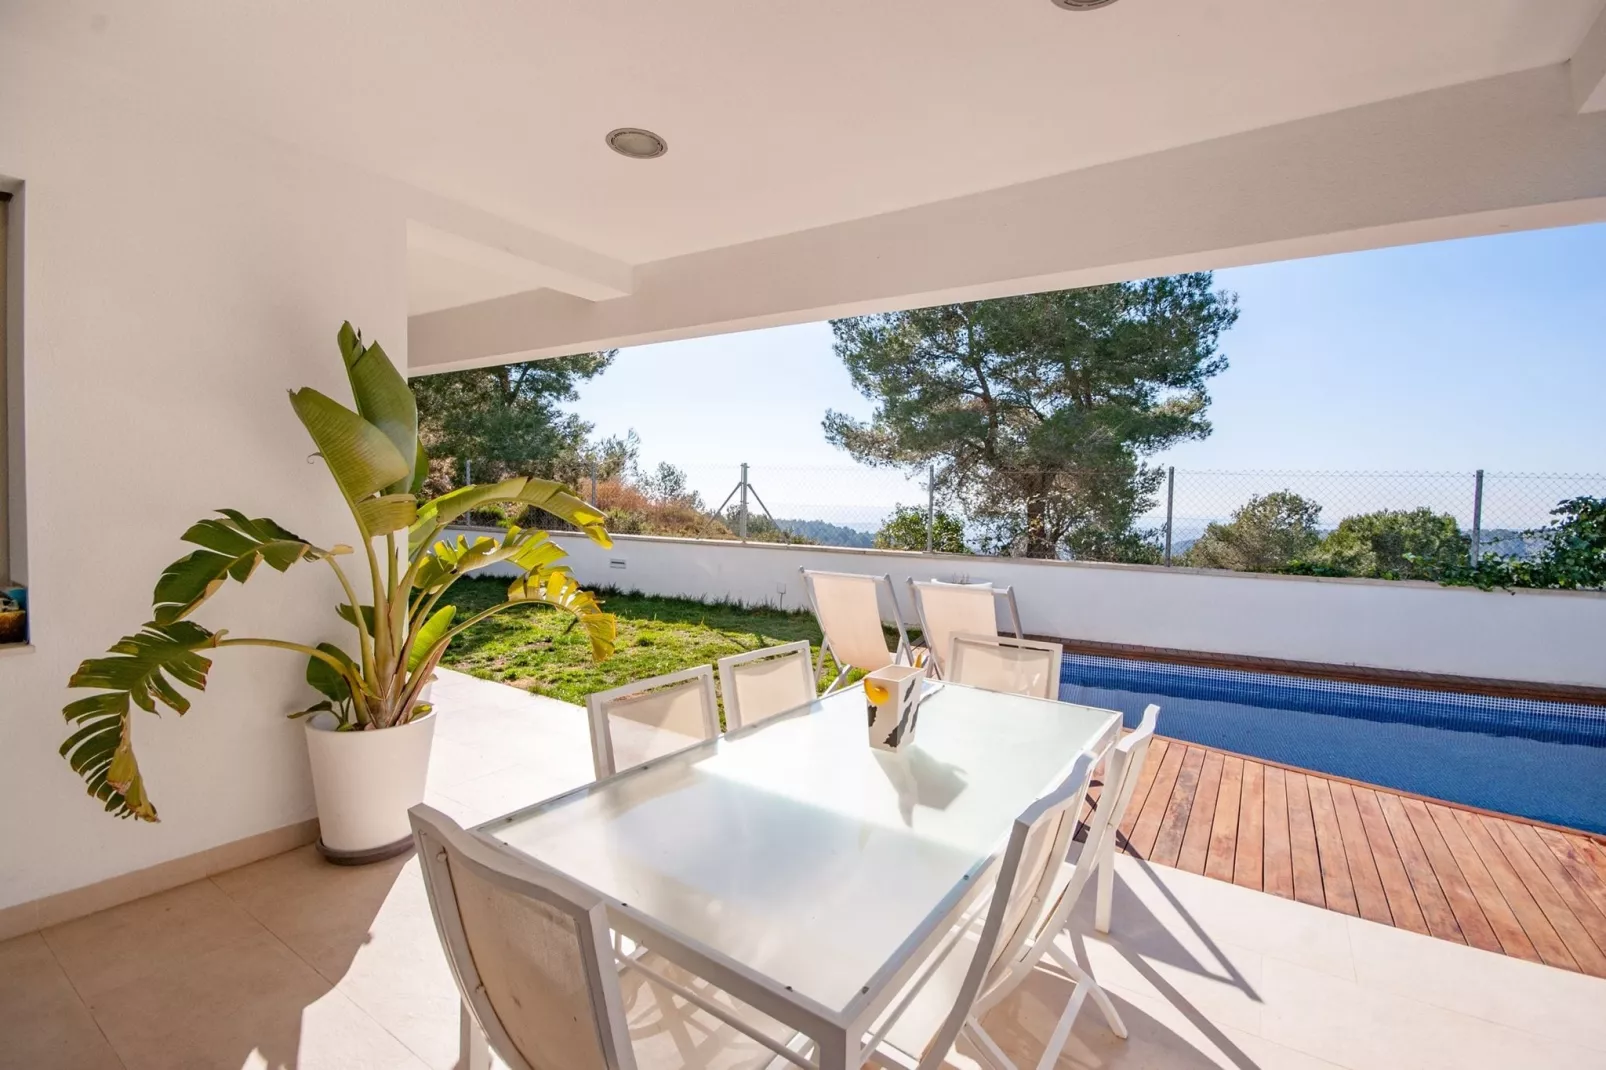 Prachtige villa met zwembad en prachtig uitzicht op zee dichtbij Barcelona-Tuinen zomer